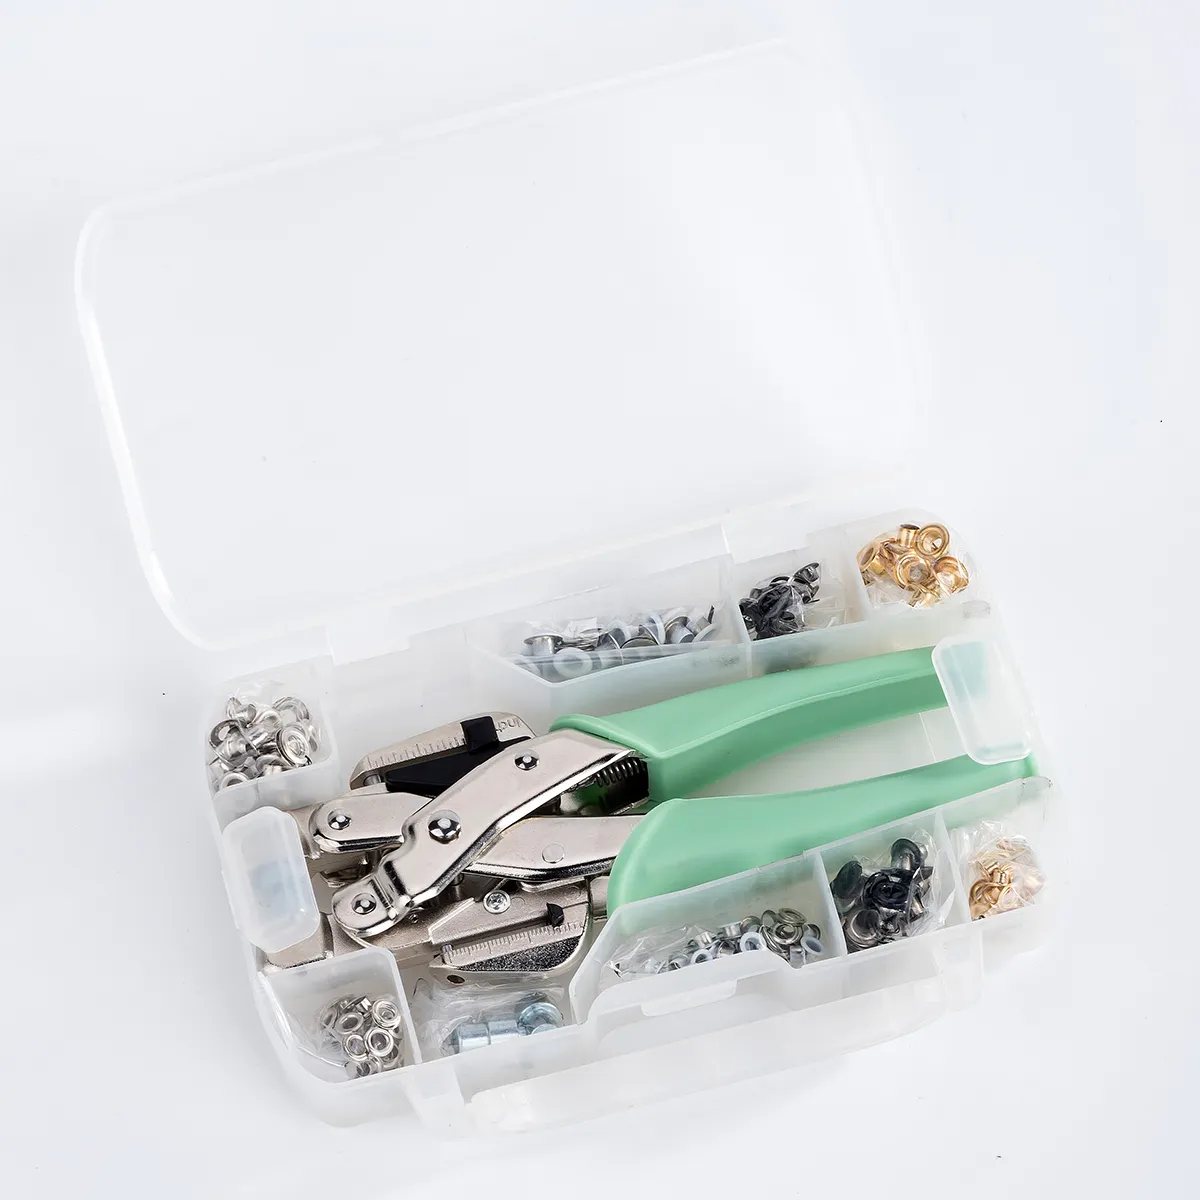 Kit lubang tali warna-warni 3mm dan 5mm, dengan alat tang lubang tali untuk kerajinan